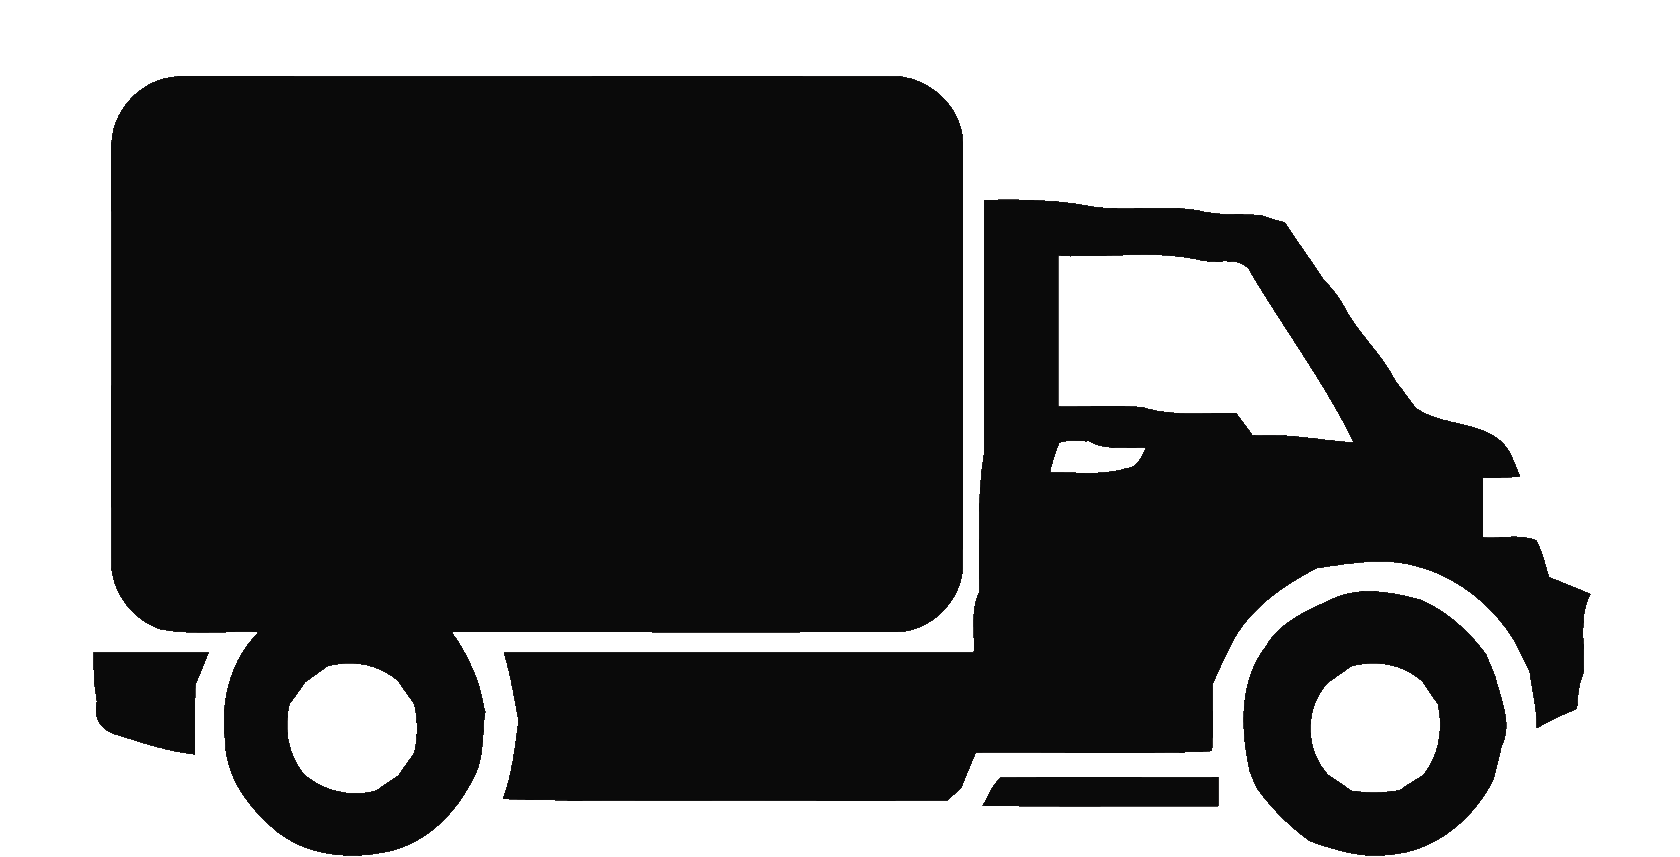 Знак грузовичок. Значок грузовика. Грузовая машина пиктограмма. Символ грузового автомобиля. Машинка грузовая иконка.